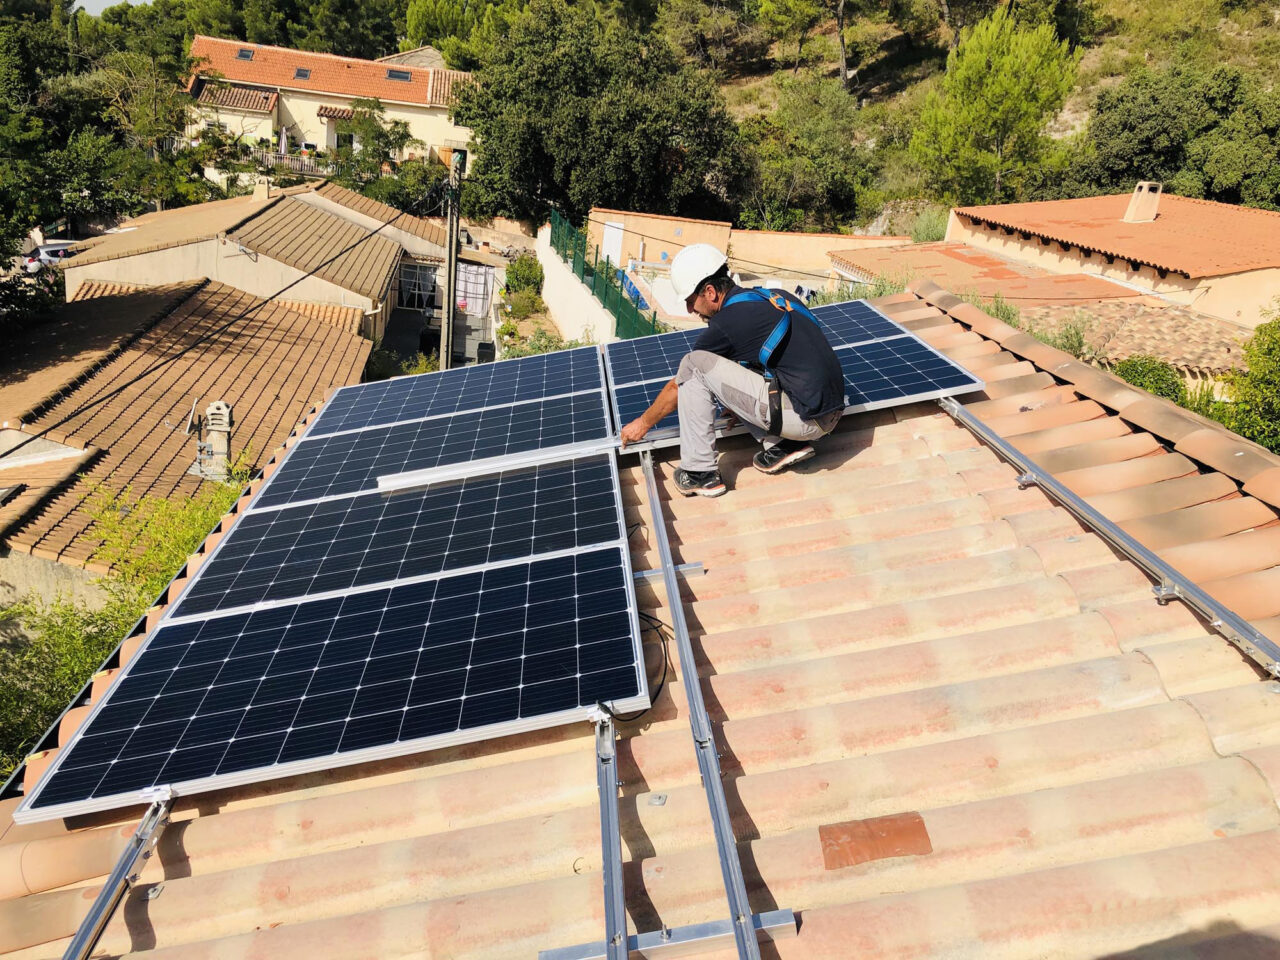 Technicien installant des panneaux solaires sur un toit de tuiles en région PACA